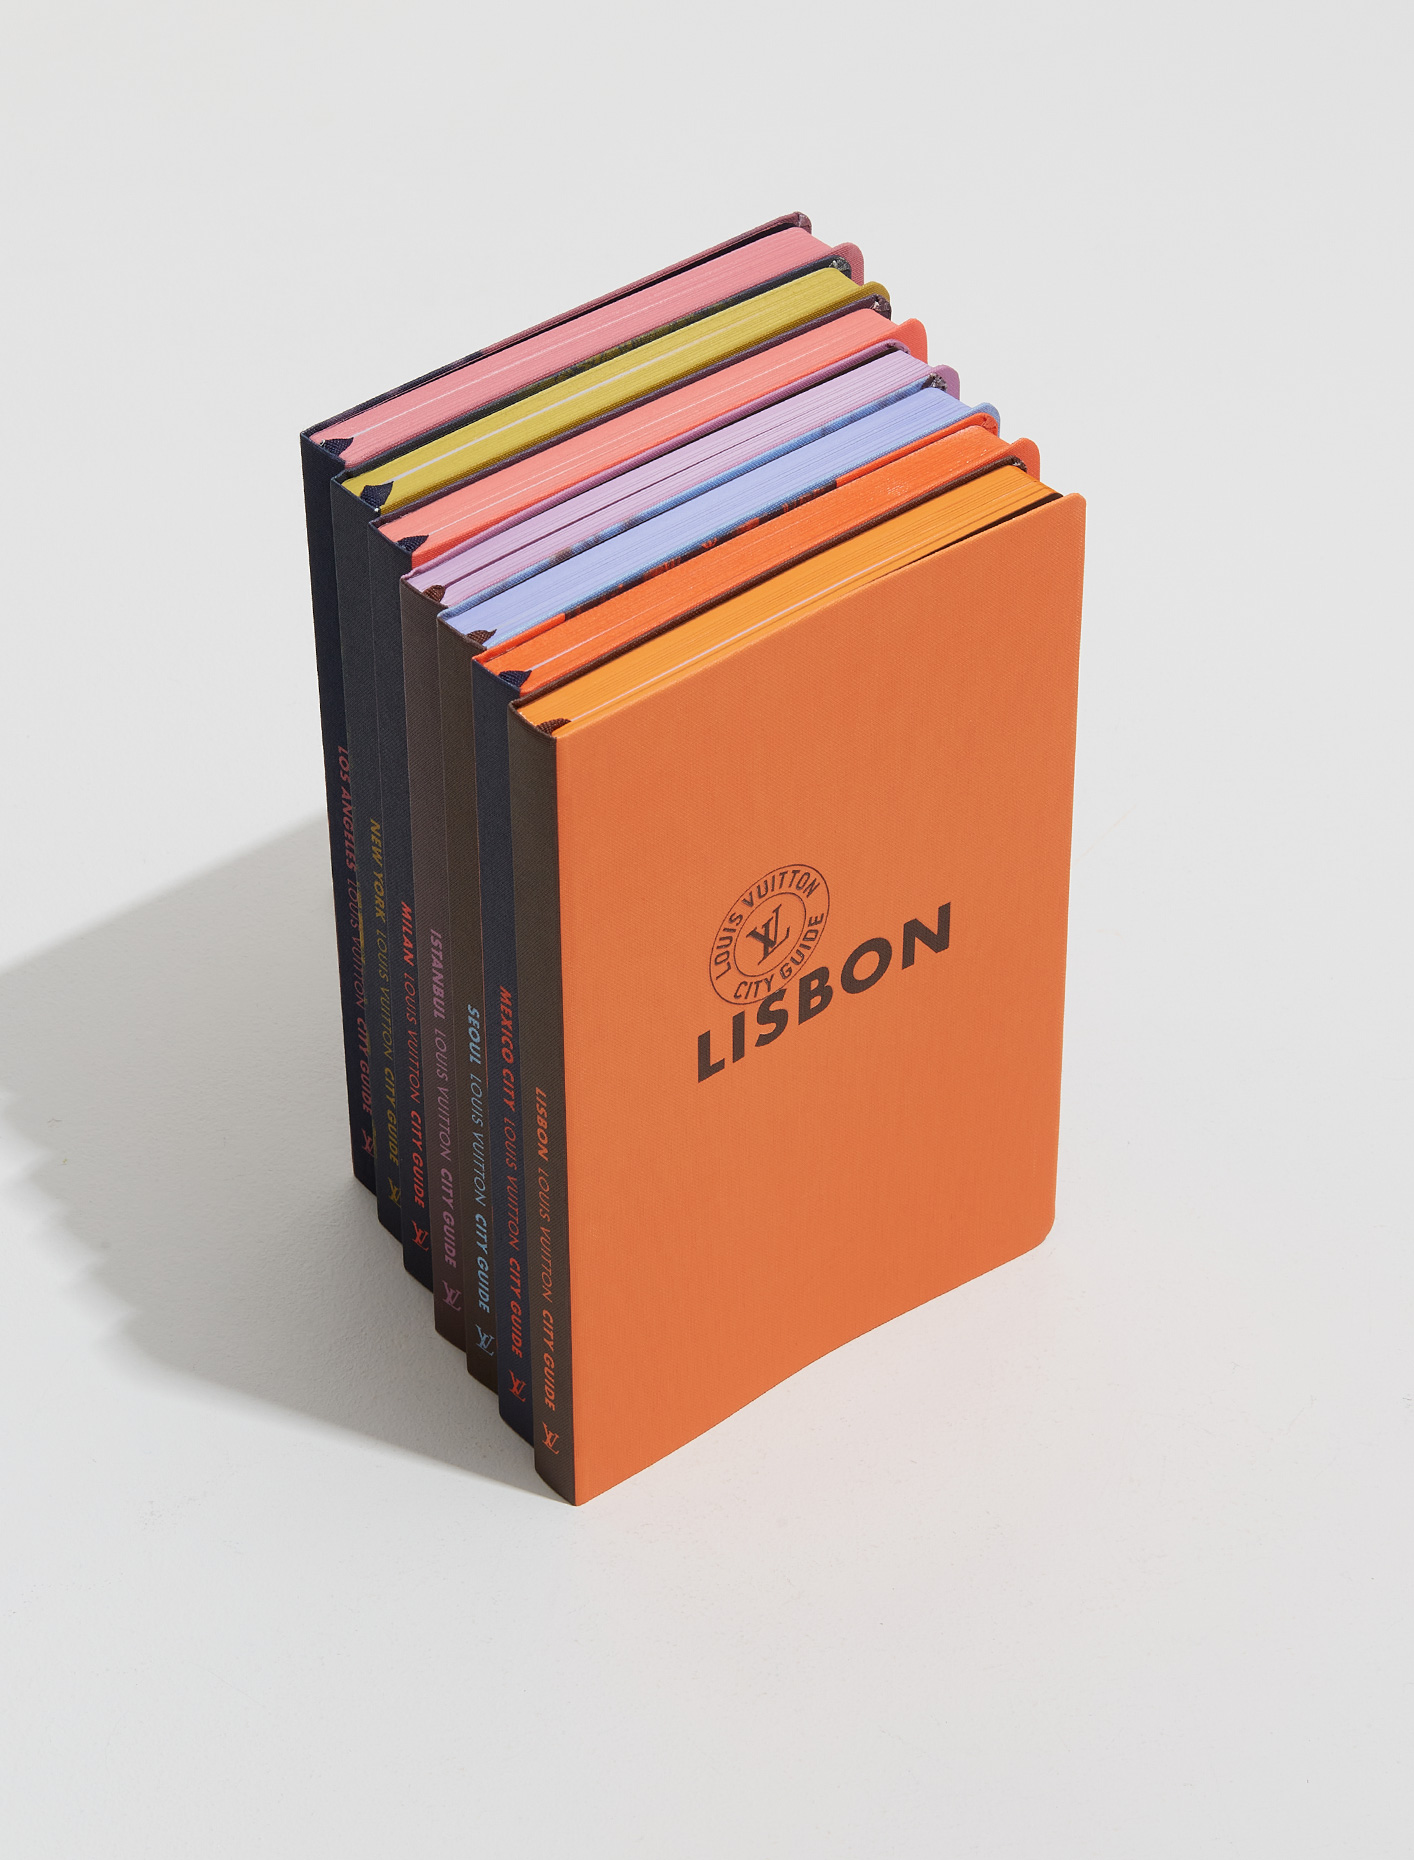 Louis Vuitton Fashion Eye Lisbon City Guide